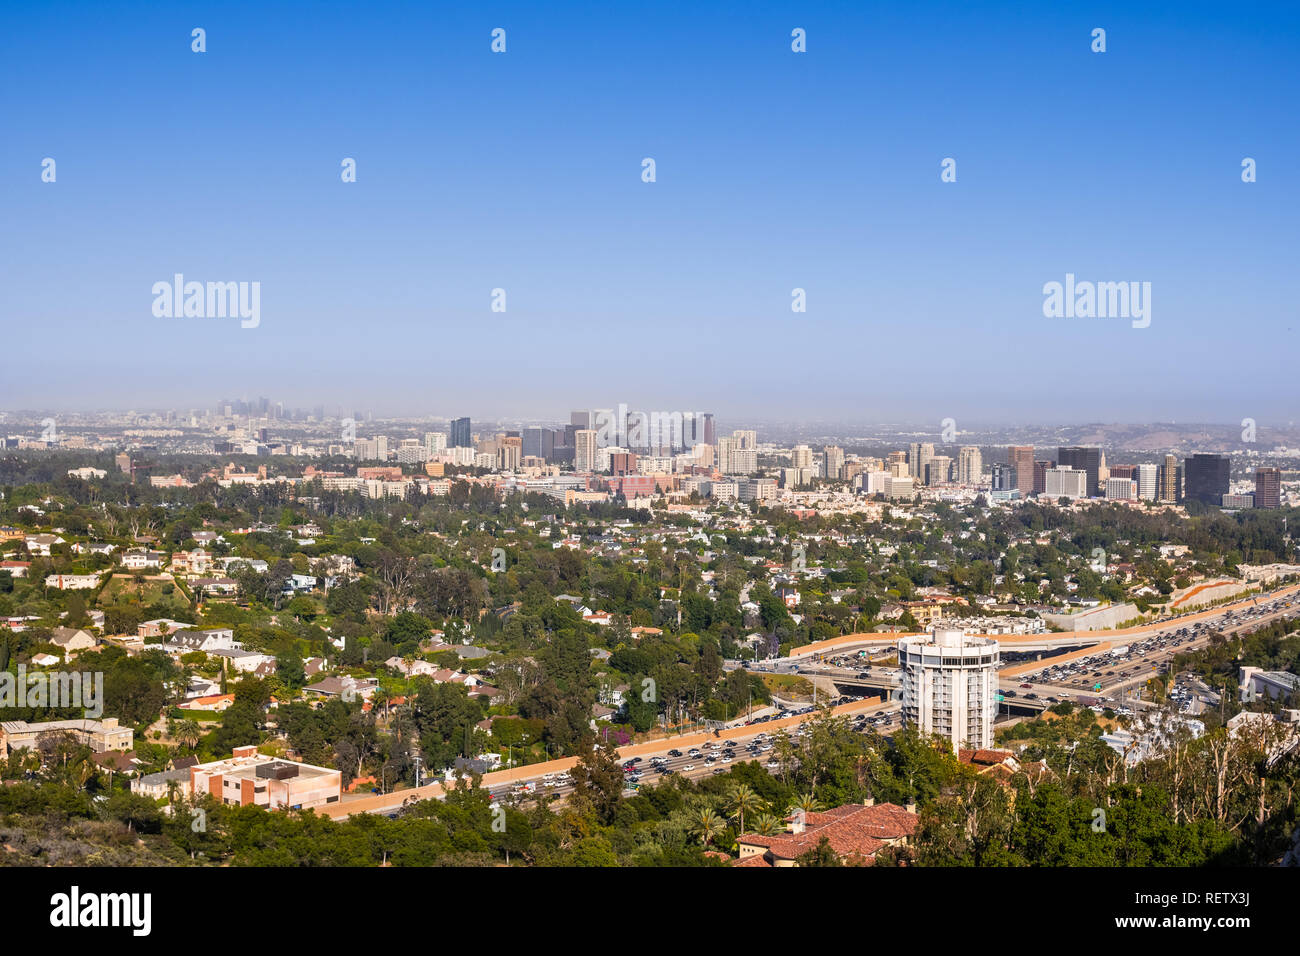 Vista aerea verso lo skyline della città del secolo nel quartiere commerciale; downtown area grattacieli visibili in background; autostrada 405 e residenziale Foto Stock